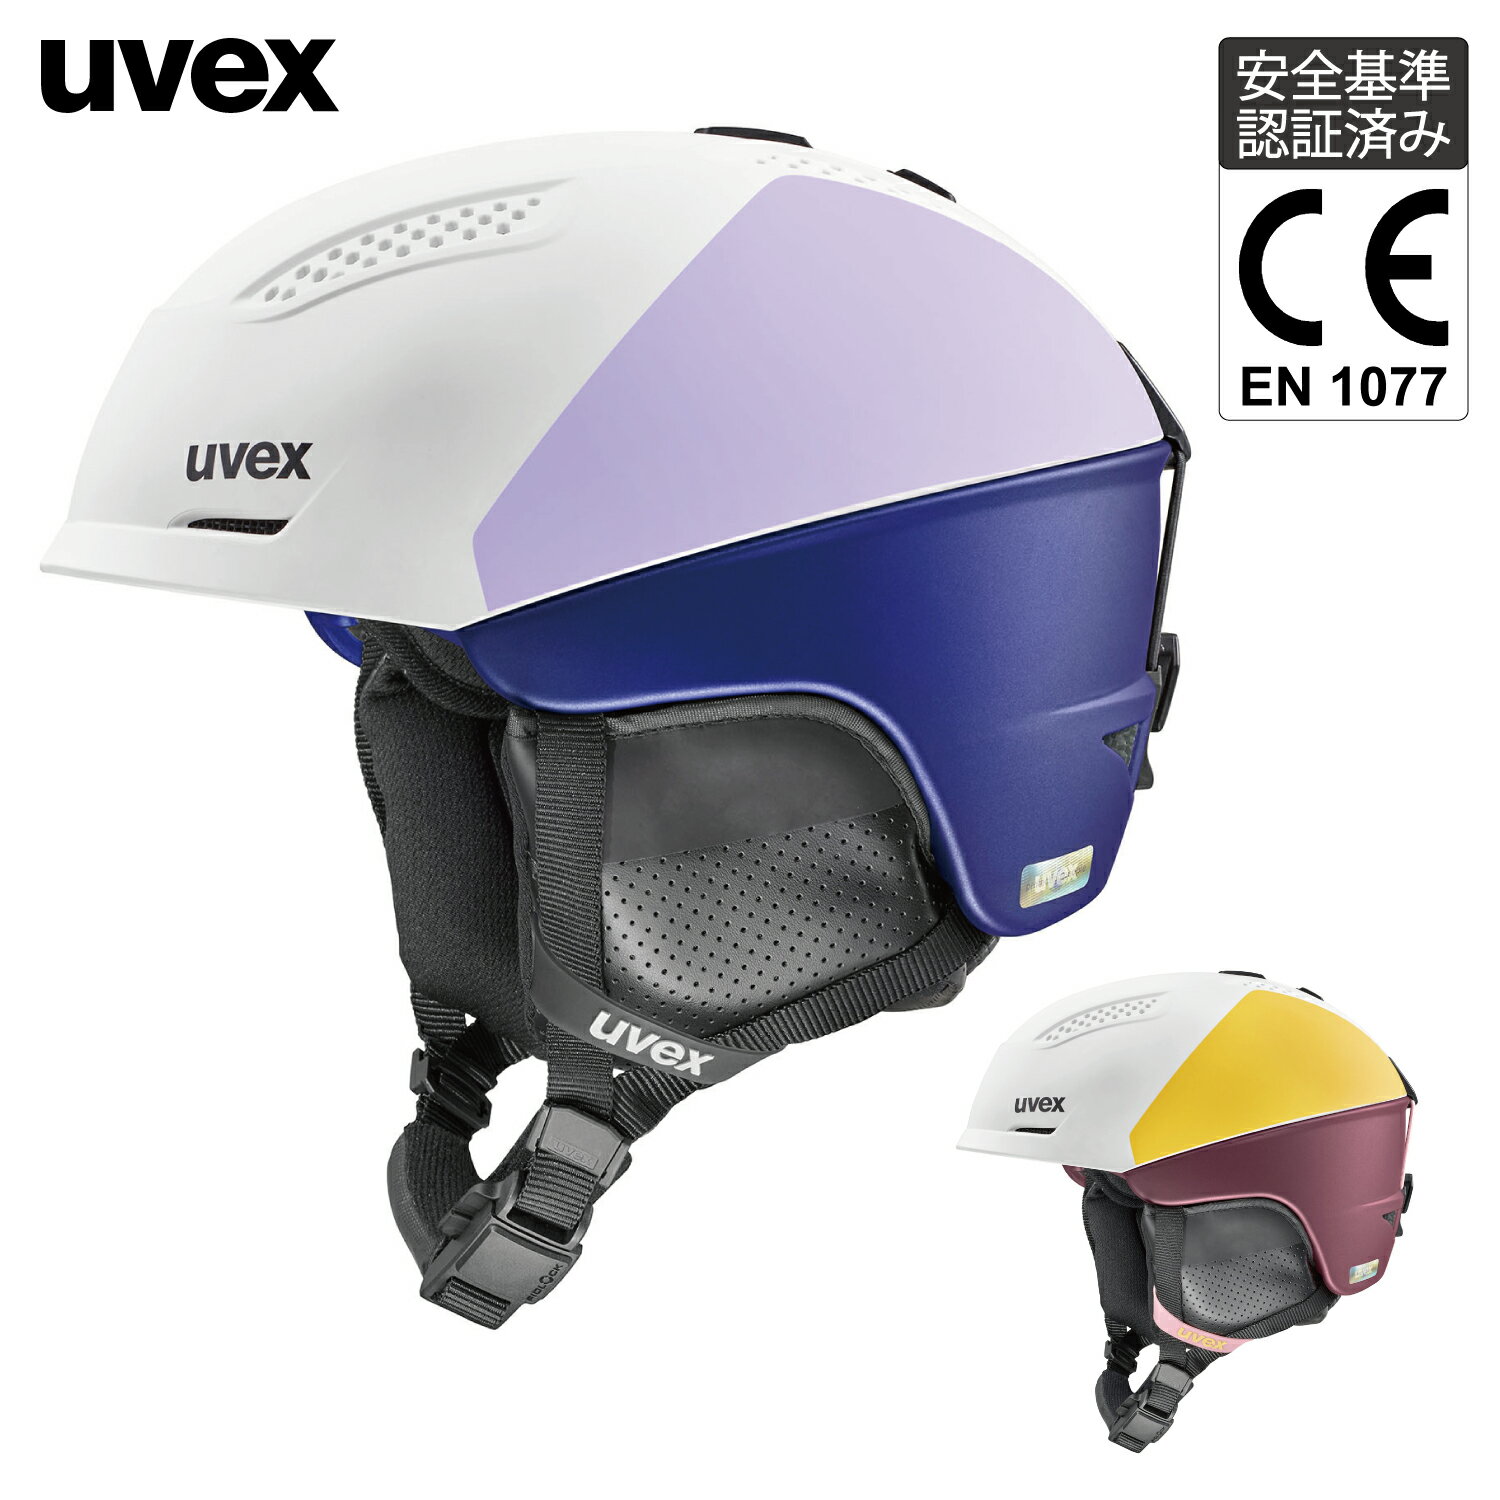 uvex ウベックス レディース スキー スノーボード ヘルメット ダイヤル式サイズ調整 開閉式ベンチレーション ultra pro WE サイズ 51-55cm 55-59cm